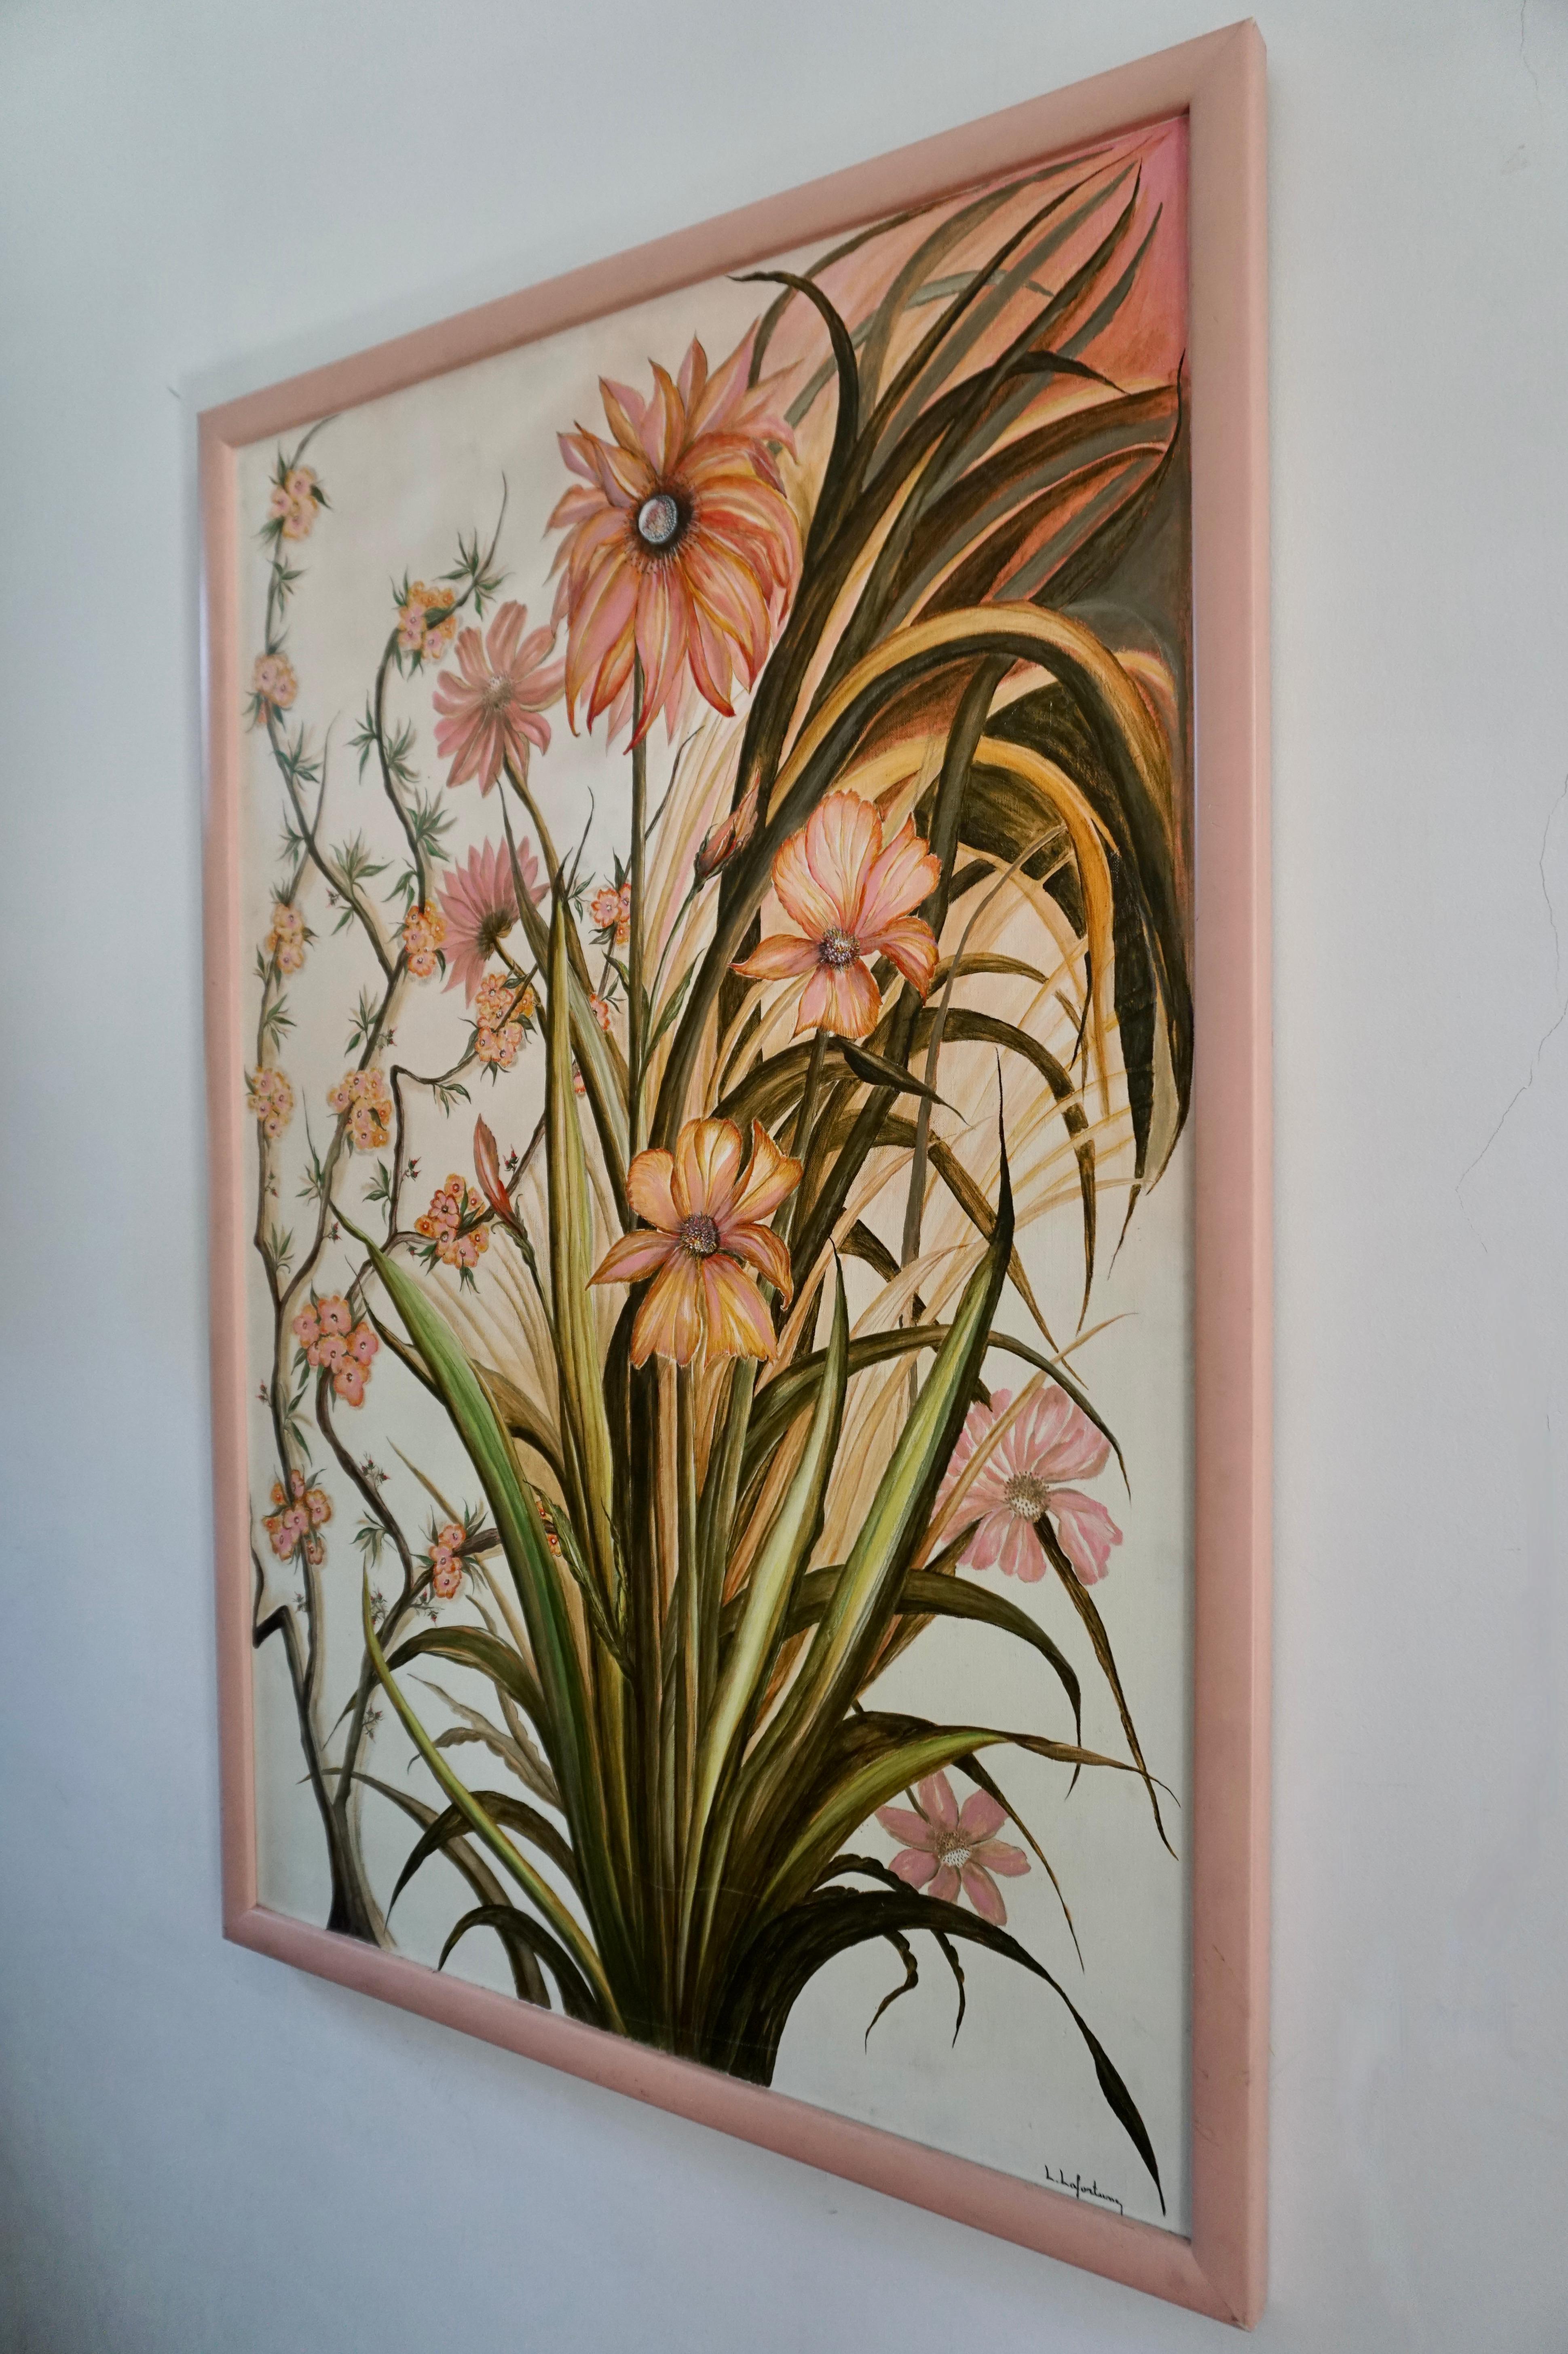 Ein wunderschönes realistisches Gemälde von rosa Blumen des Künstlers L. Lafortune. 

Medium: Öl auf Leinwand.